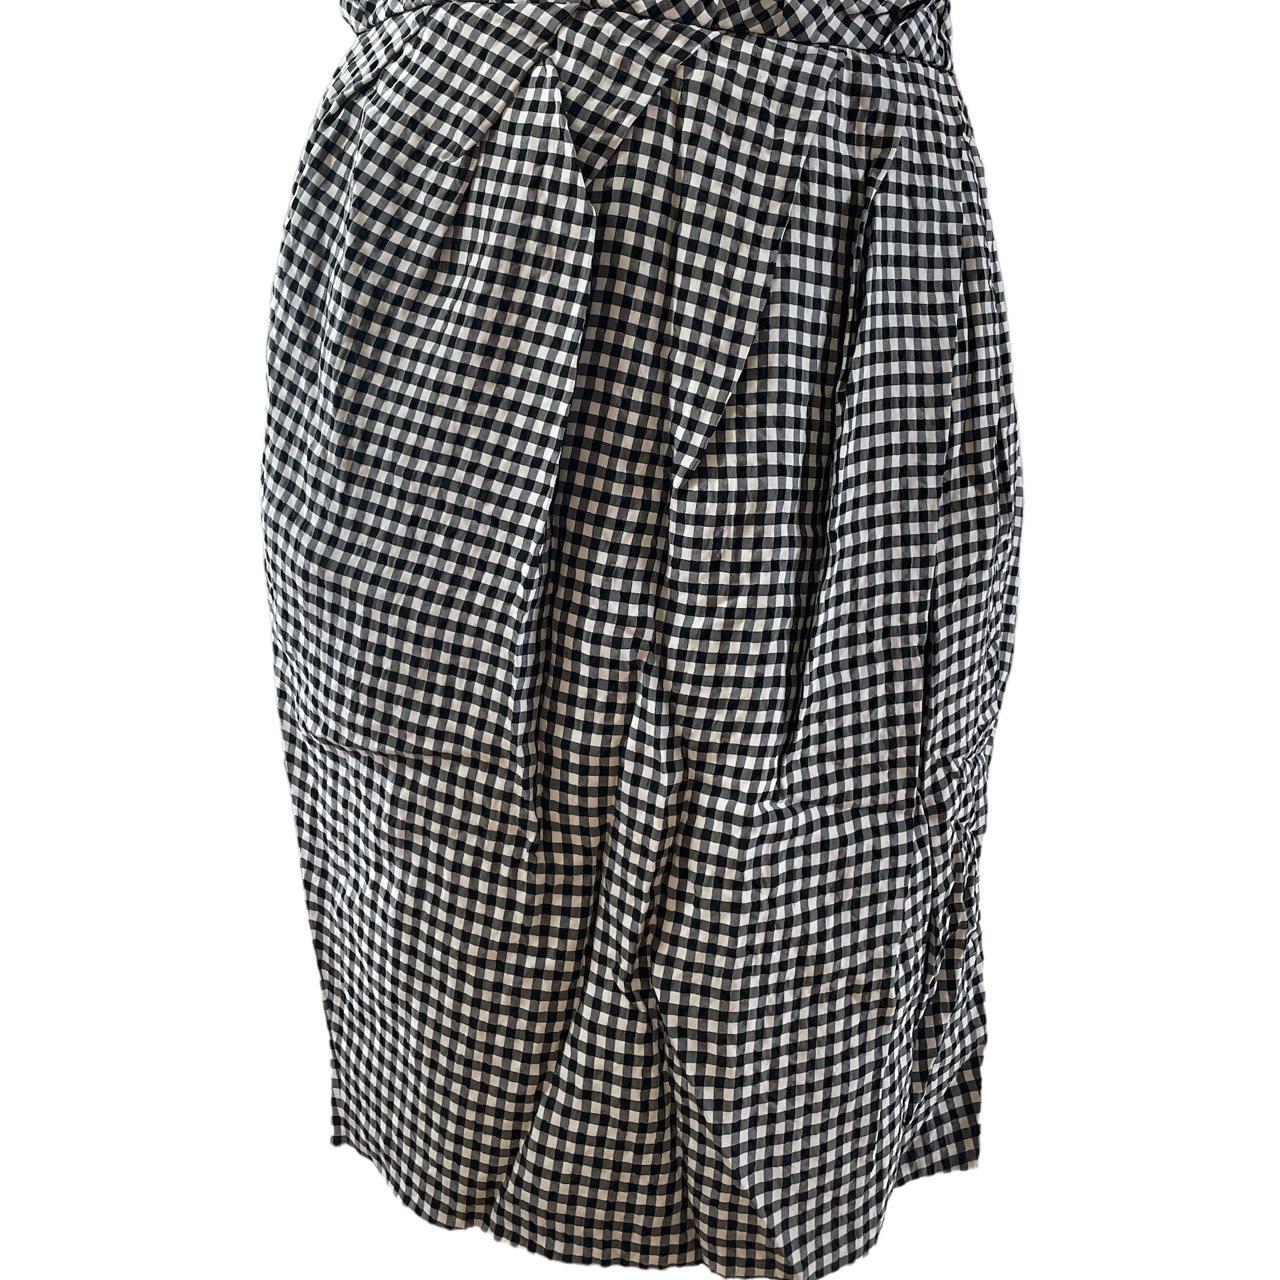 Moschino Cheap & Chic Women's Black and White Skirt (2)